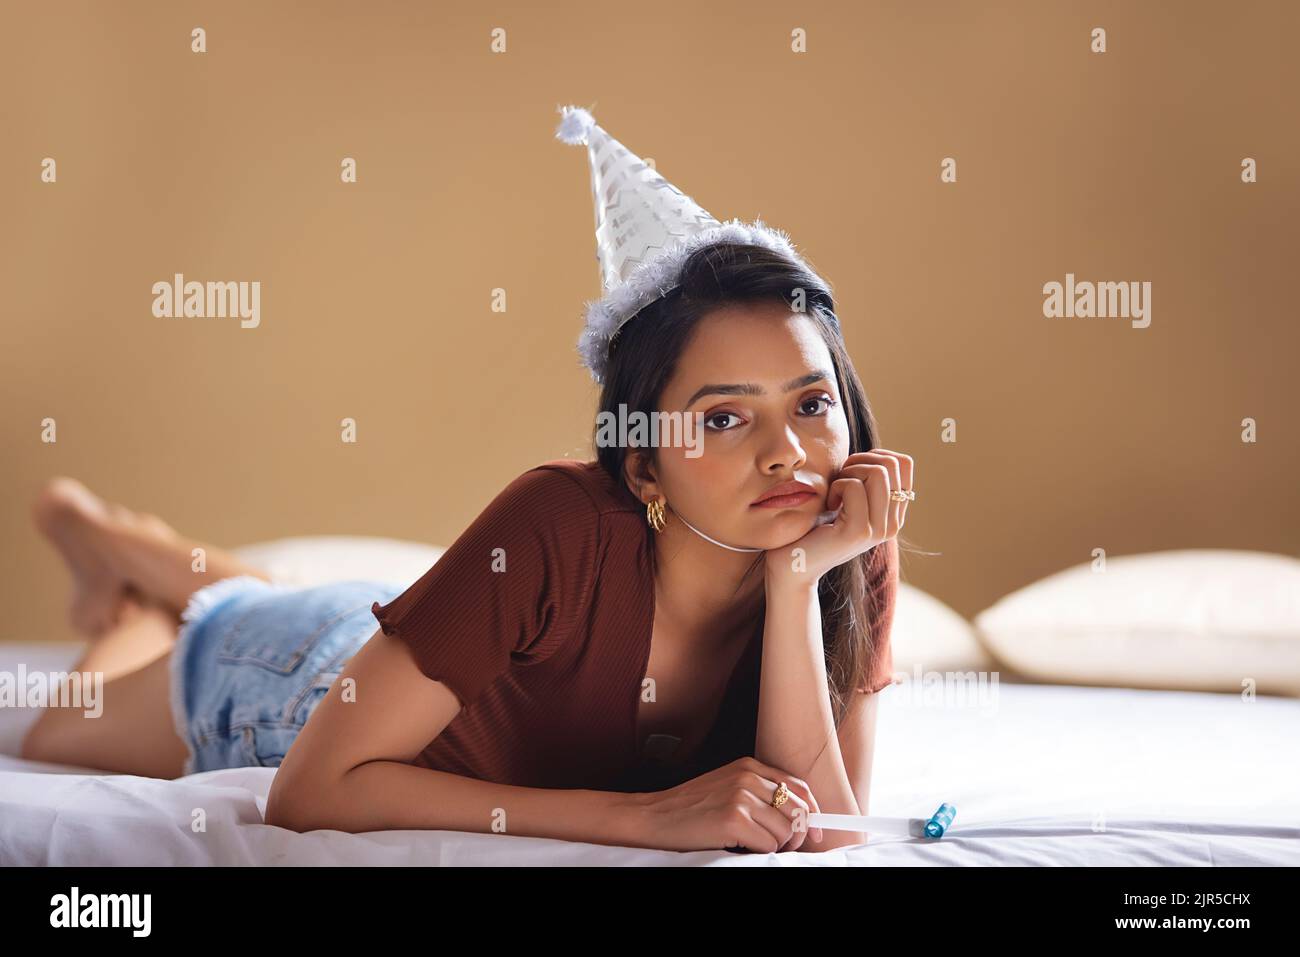 Traurige junge Frau mit Geburtstagsmütze, die auf dem Bett liegt und ihr Kinn auf der Hand liegt Stockfoto